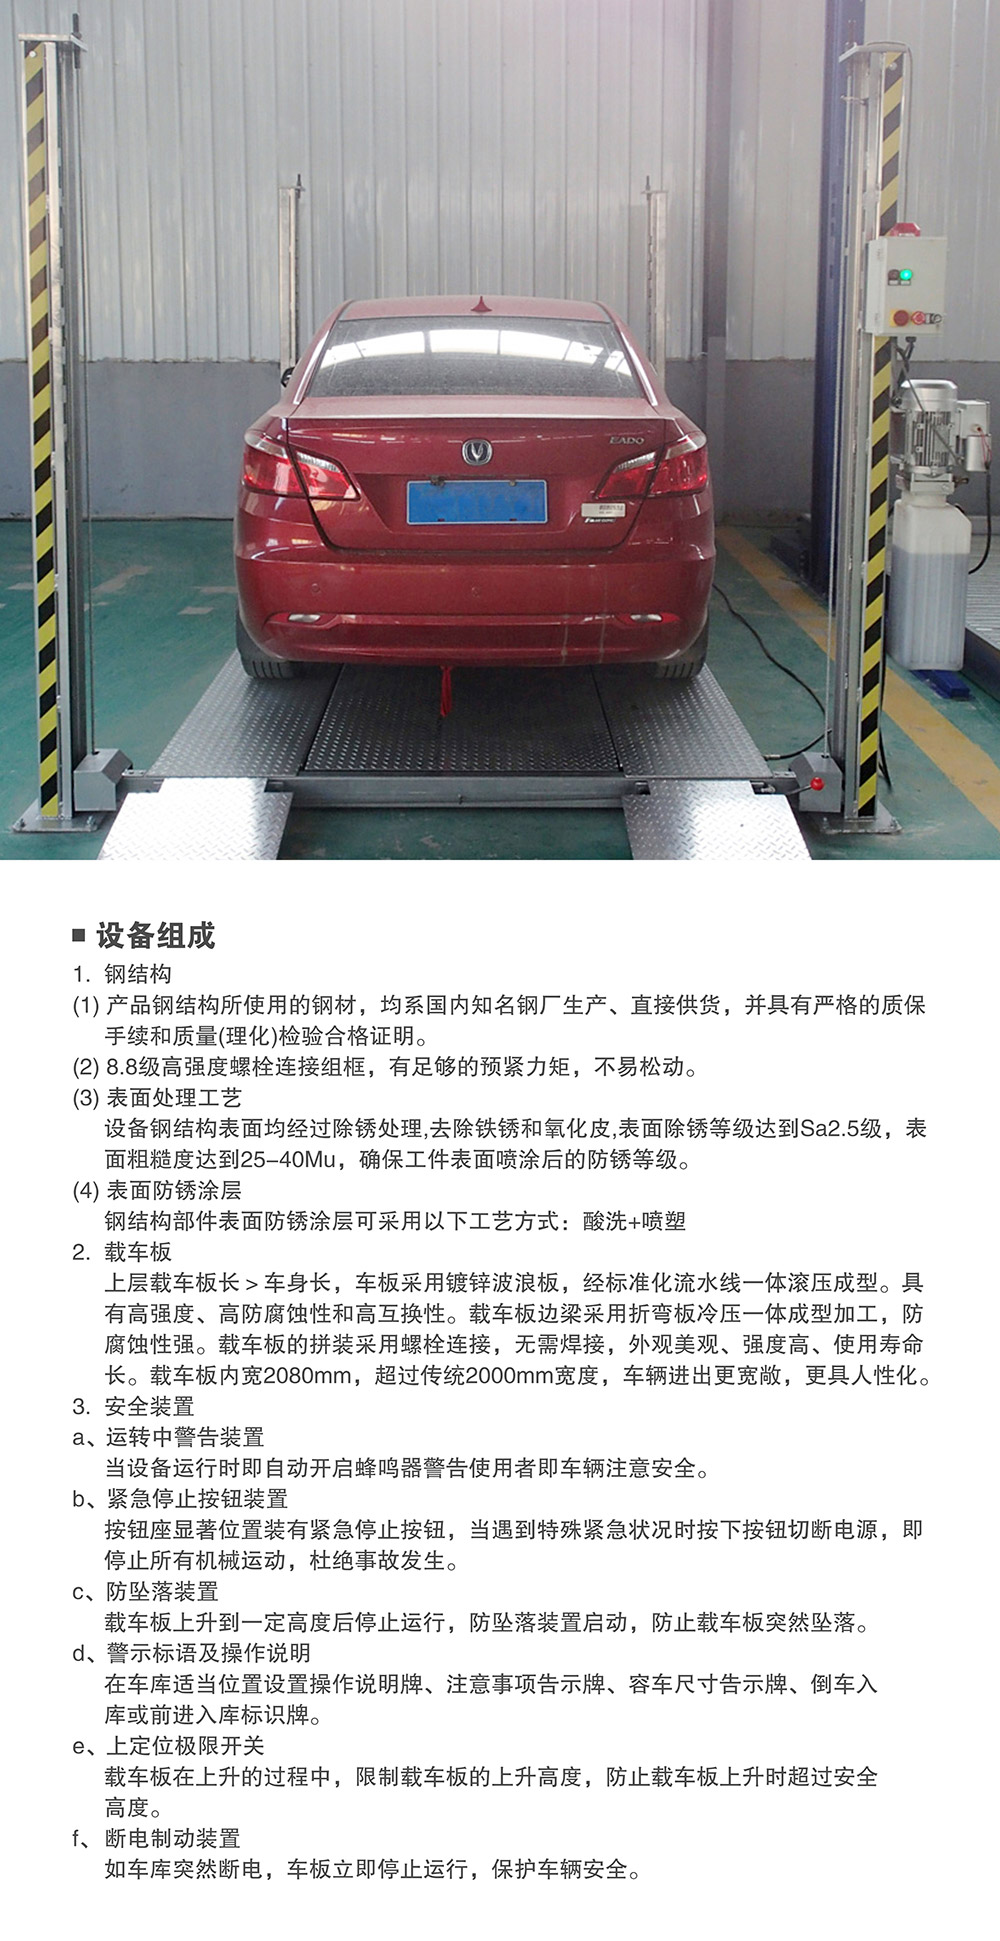 重庆四柱简易升降立体停车设备组成.jpg